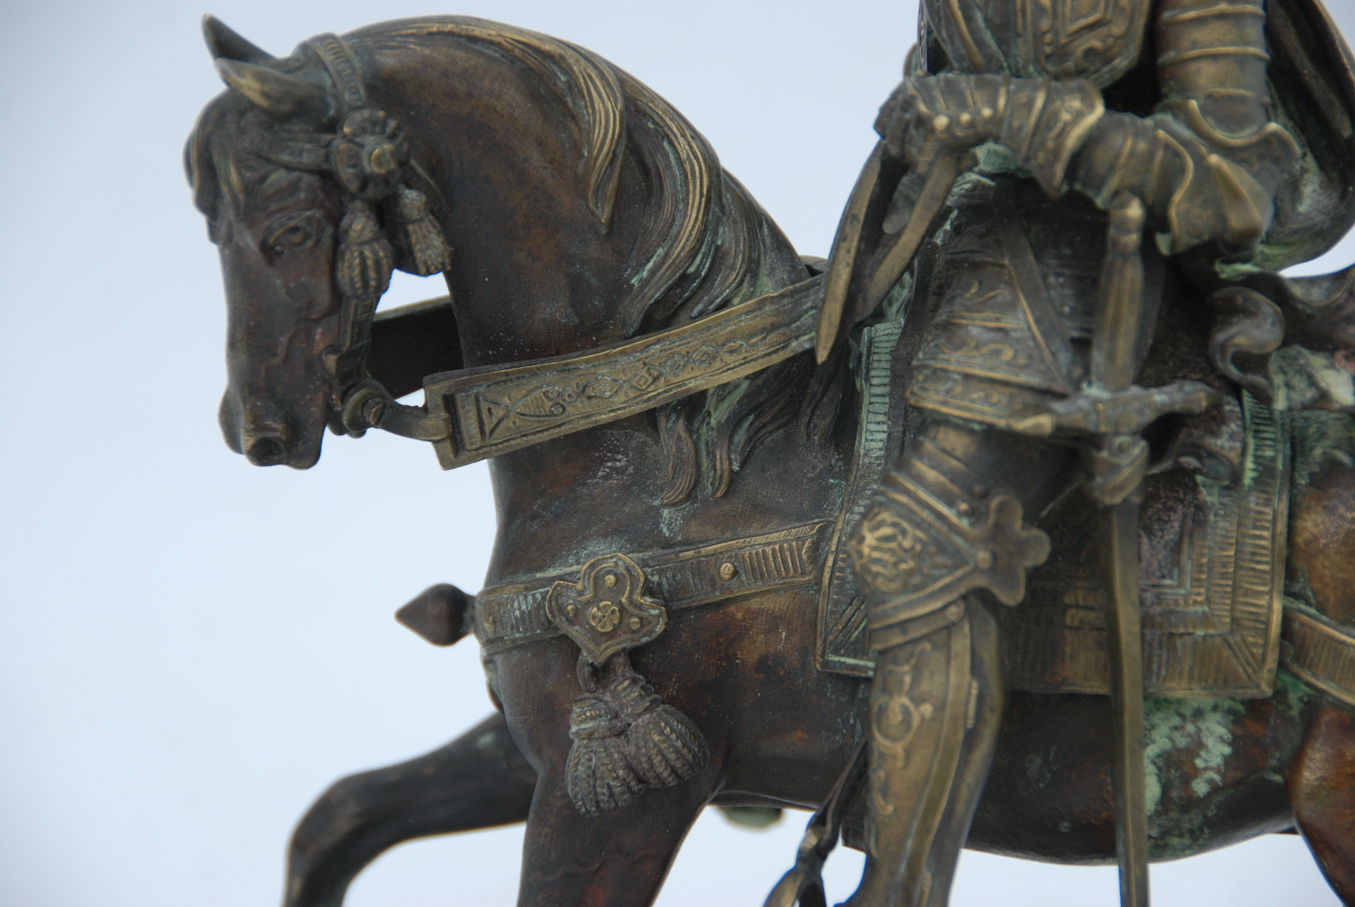 Бронзовая скульптура средневекового рыцаря на коне 18 век, Западная Европа.